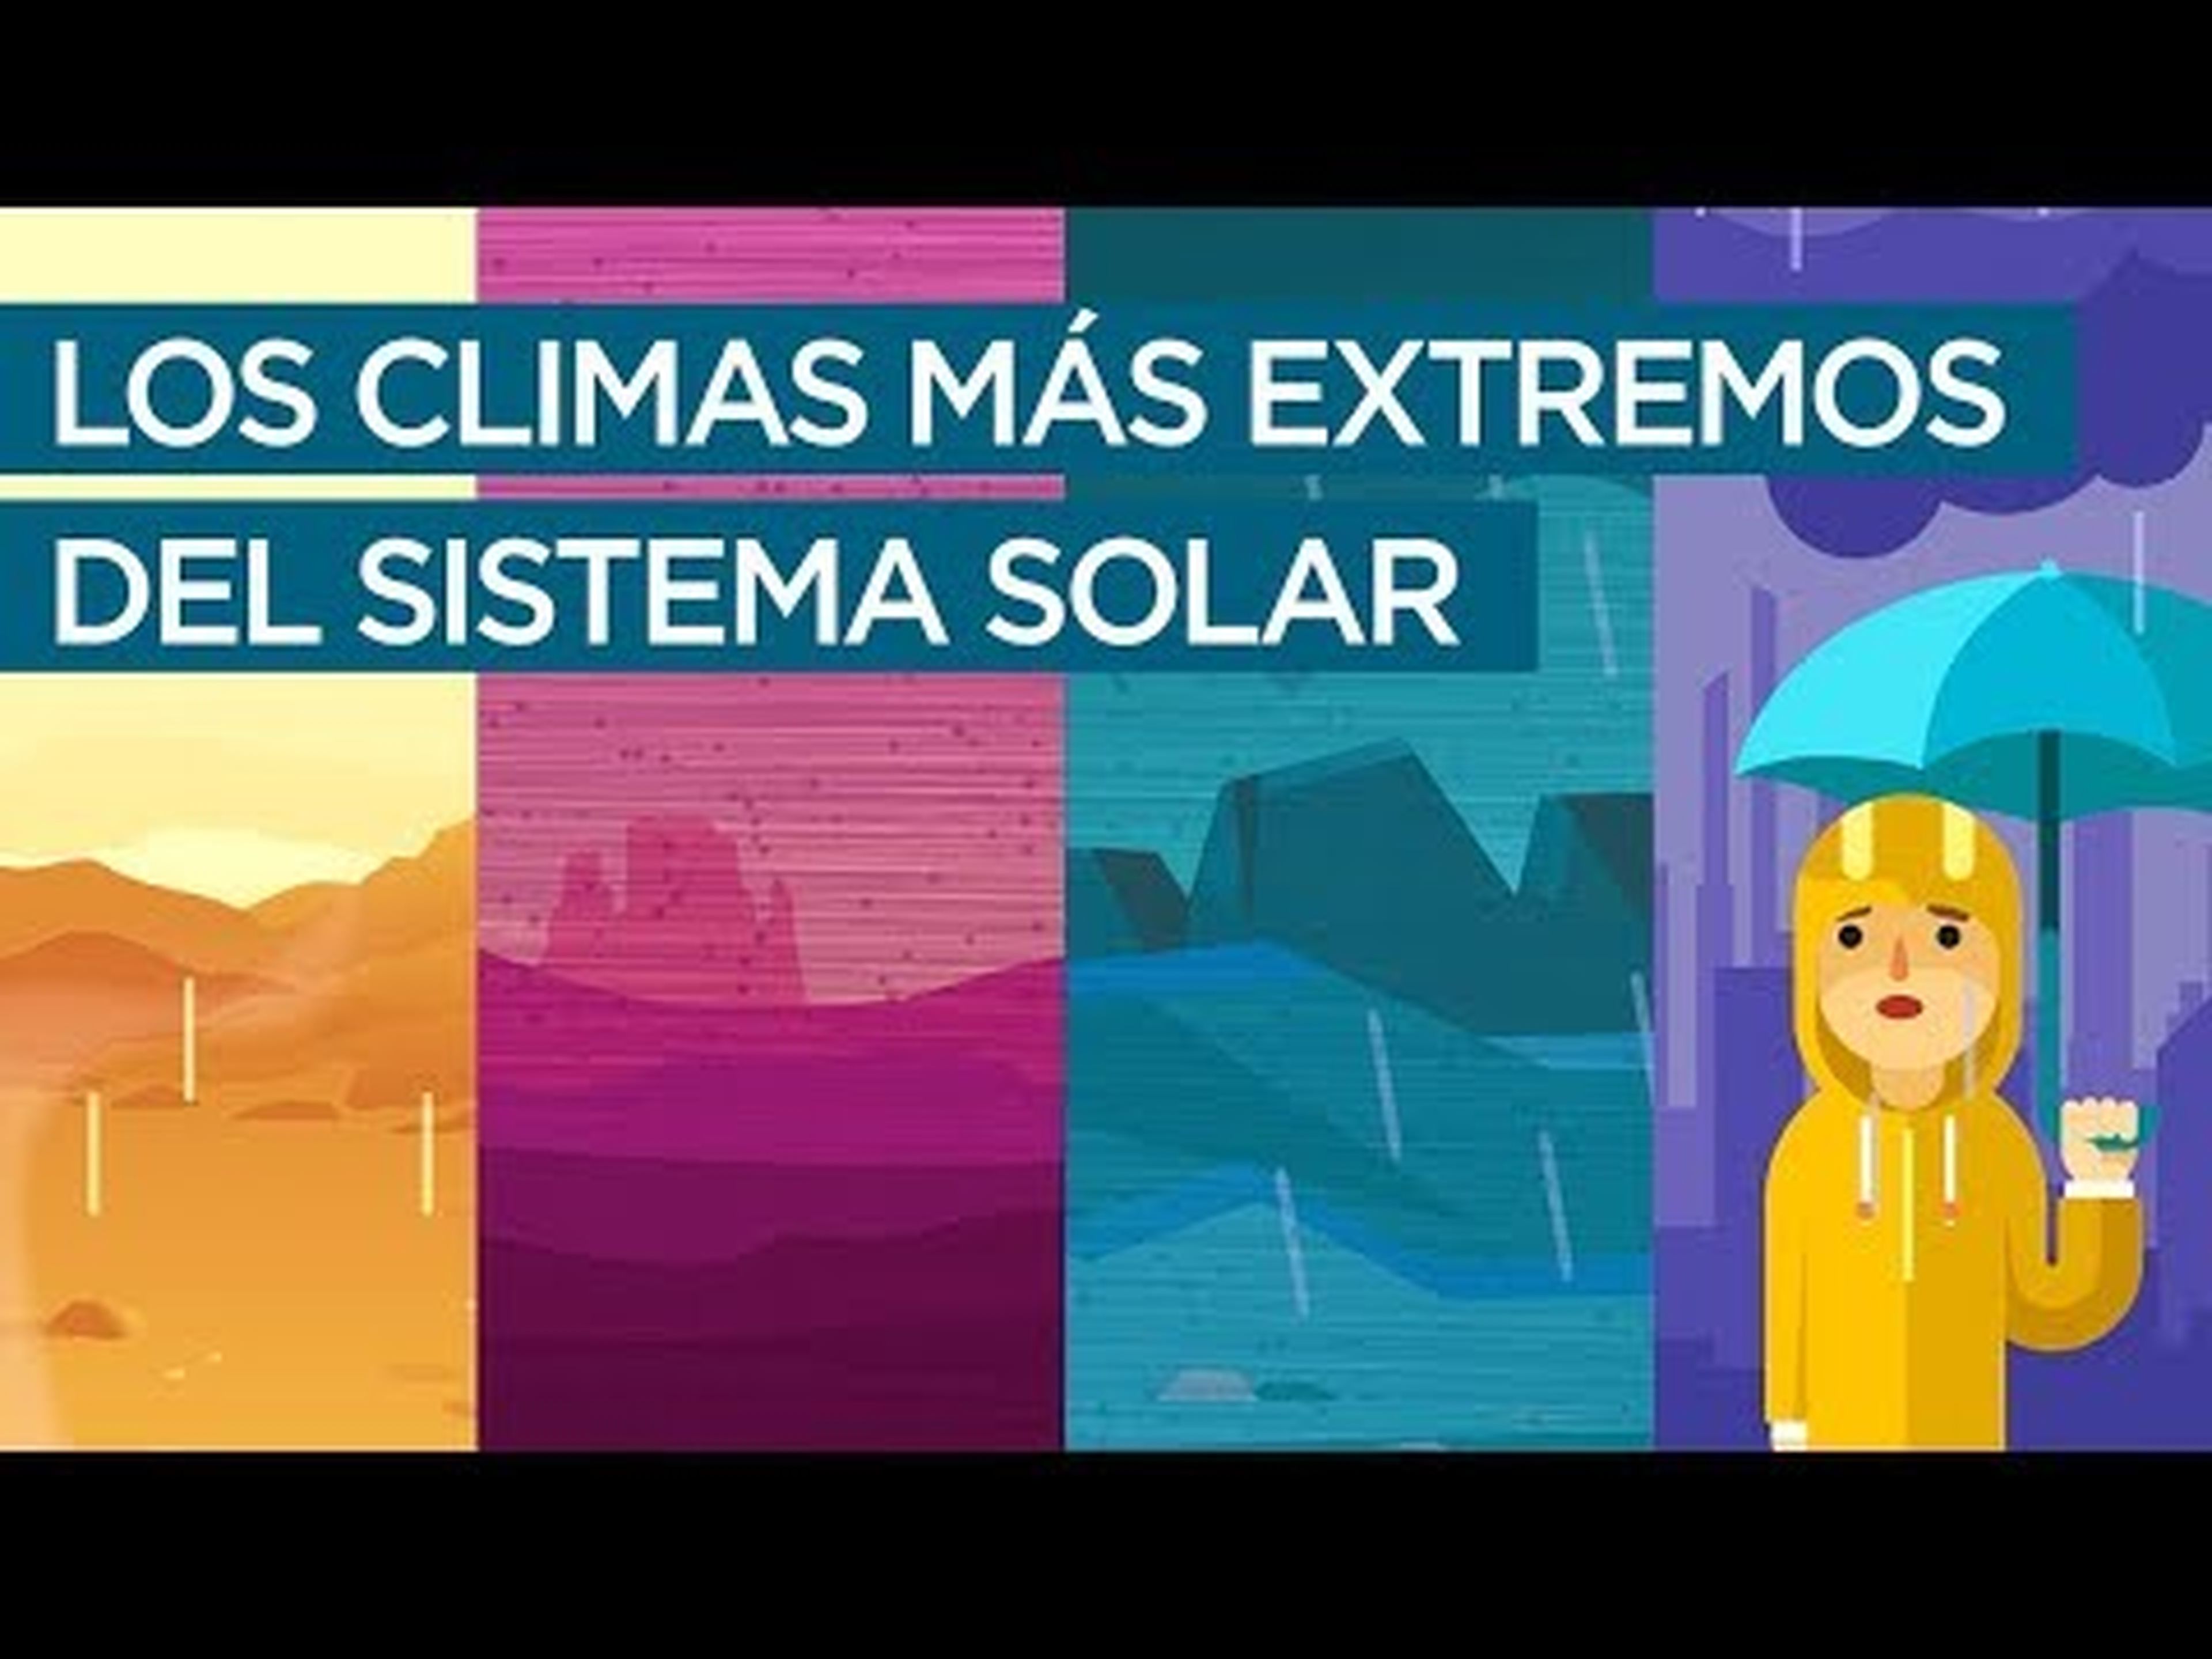 Los climas más extremos del sistema solar